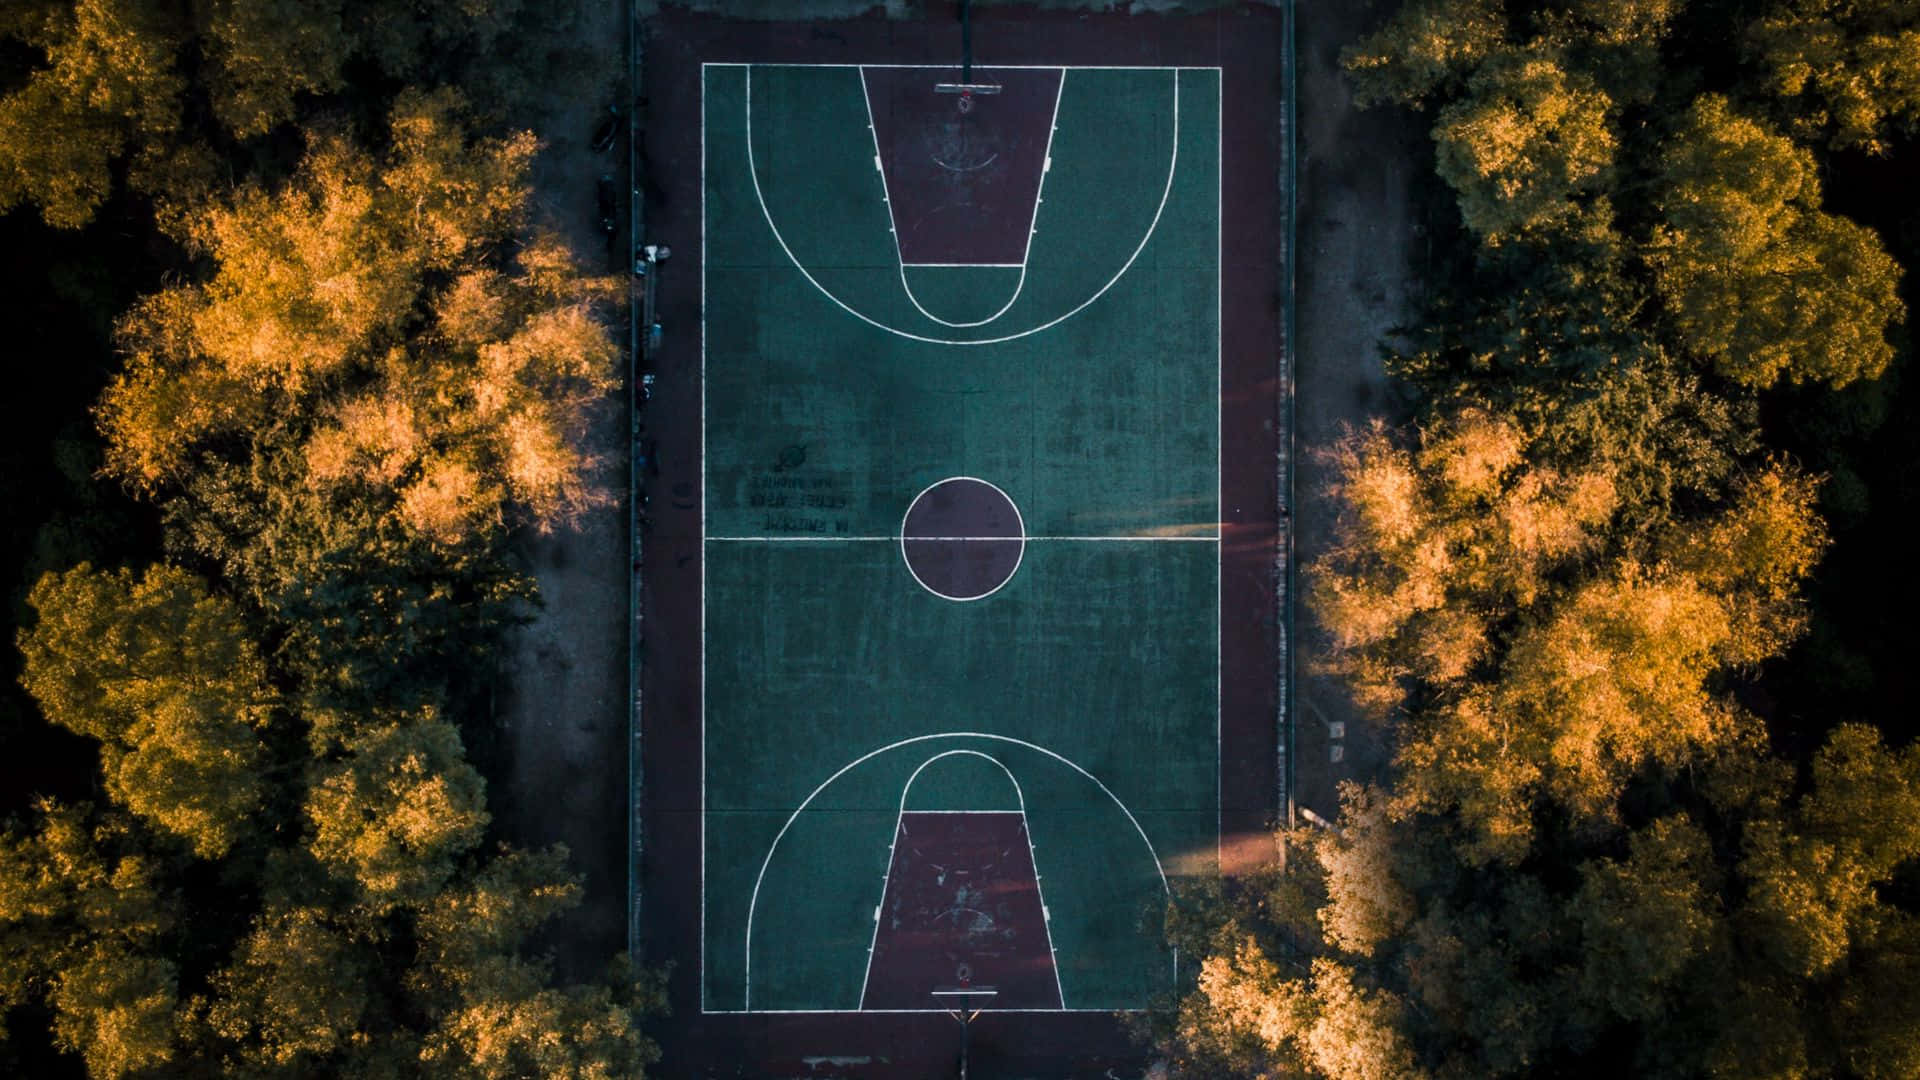 Vistaaerea Di Un Campo Da Basket Nel Parco